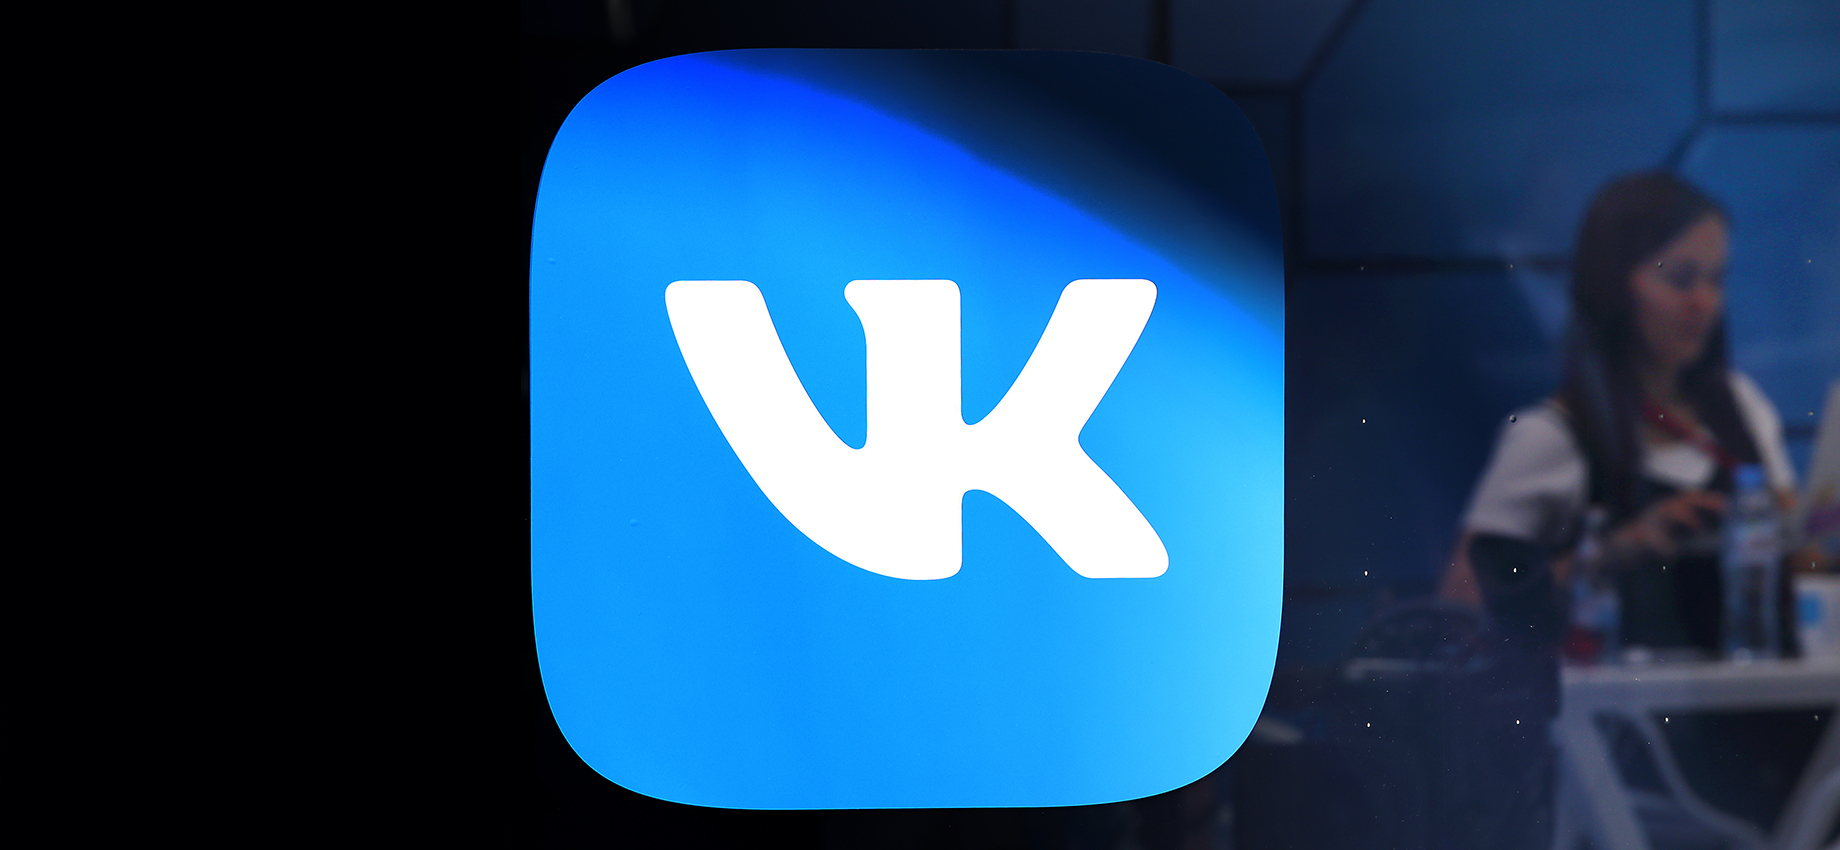 VK продает игровой бизнес. Что это значит для компании